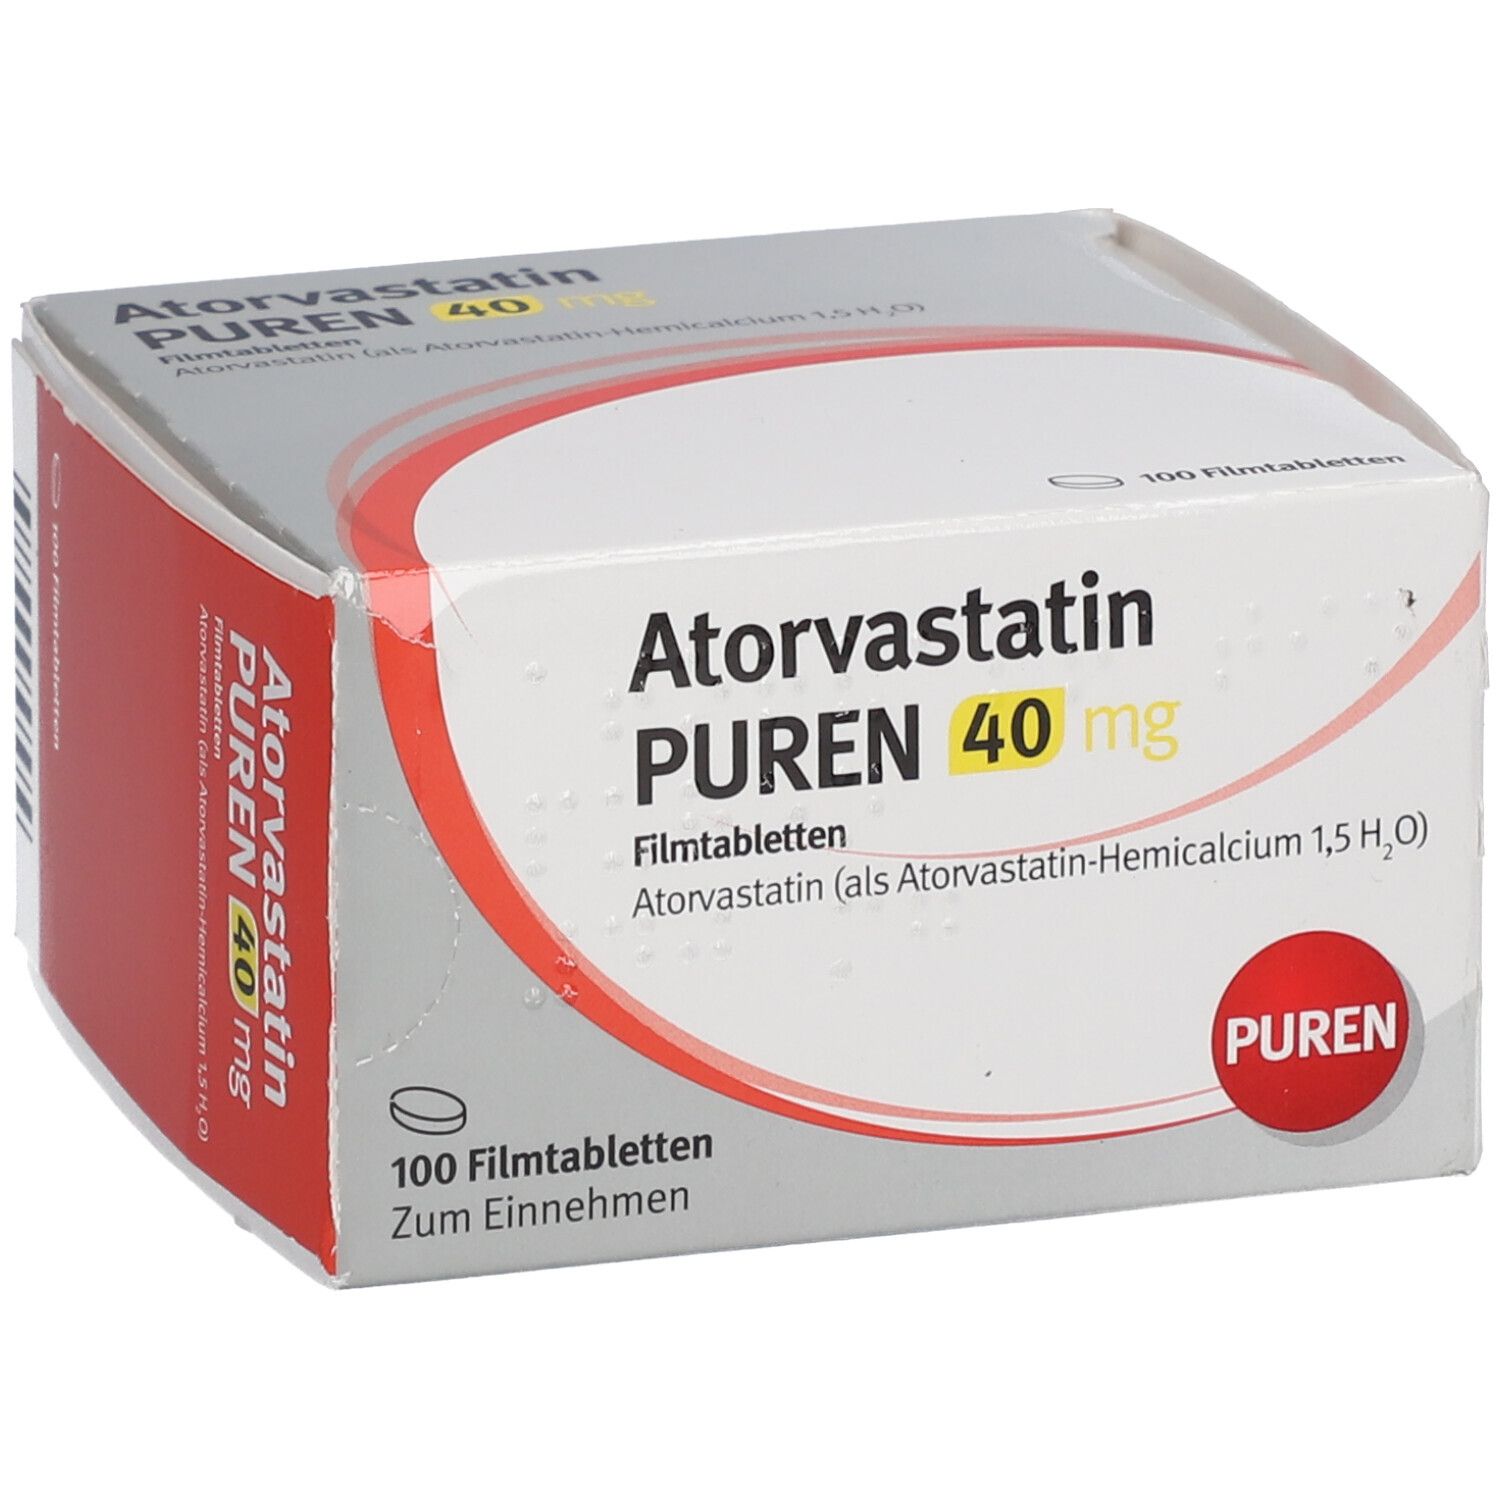 Atorvastatin PUREN 40 mg